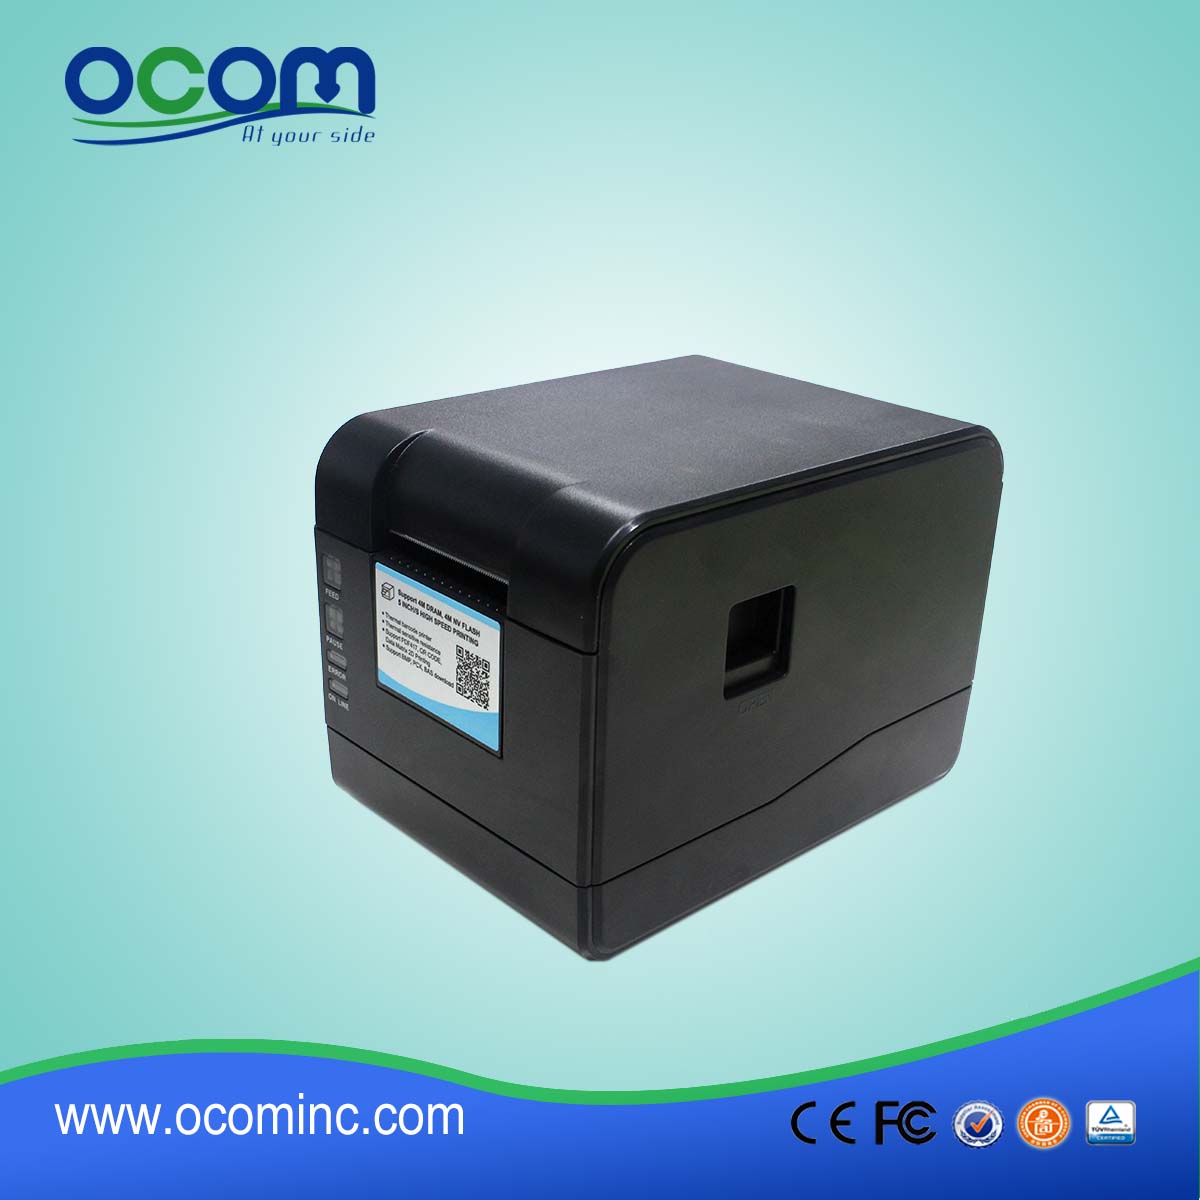 OCBP-006 Stampante per etichette a codici a barre termica diretta da 2 "Supporto per rotolo di carta termica / carta adesiva